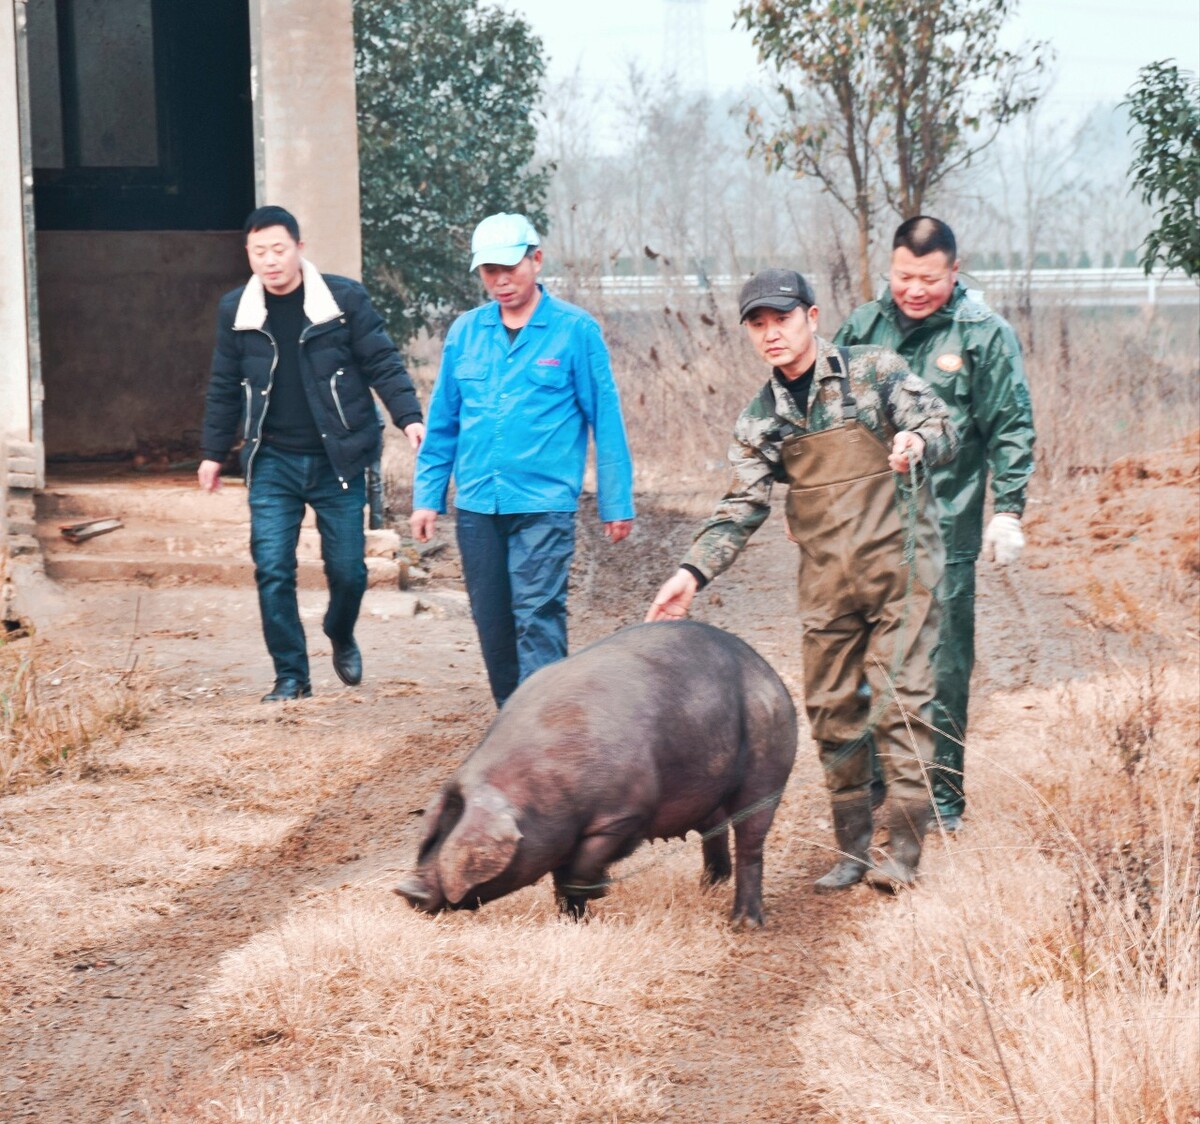 湖南山猪养殖,五指山盘山五交野猪养殖专业合作社处于开业状态